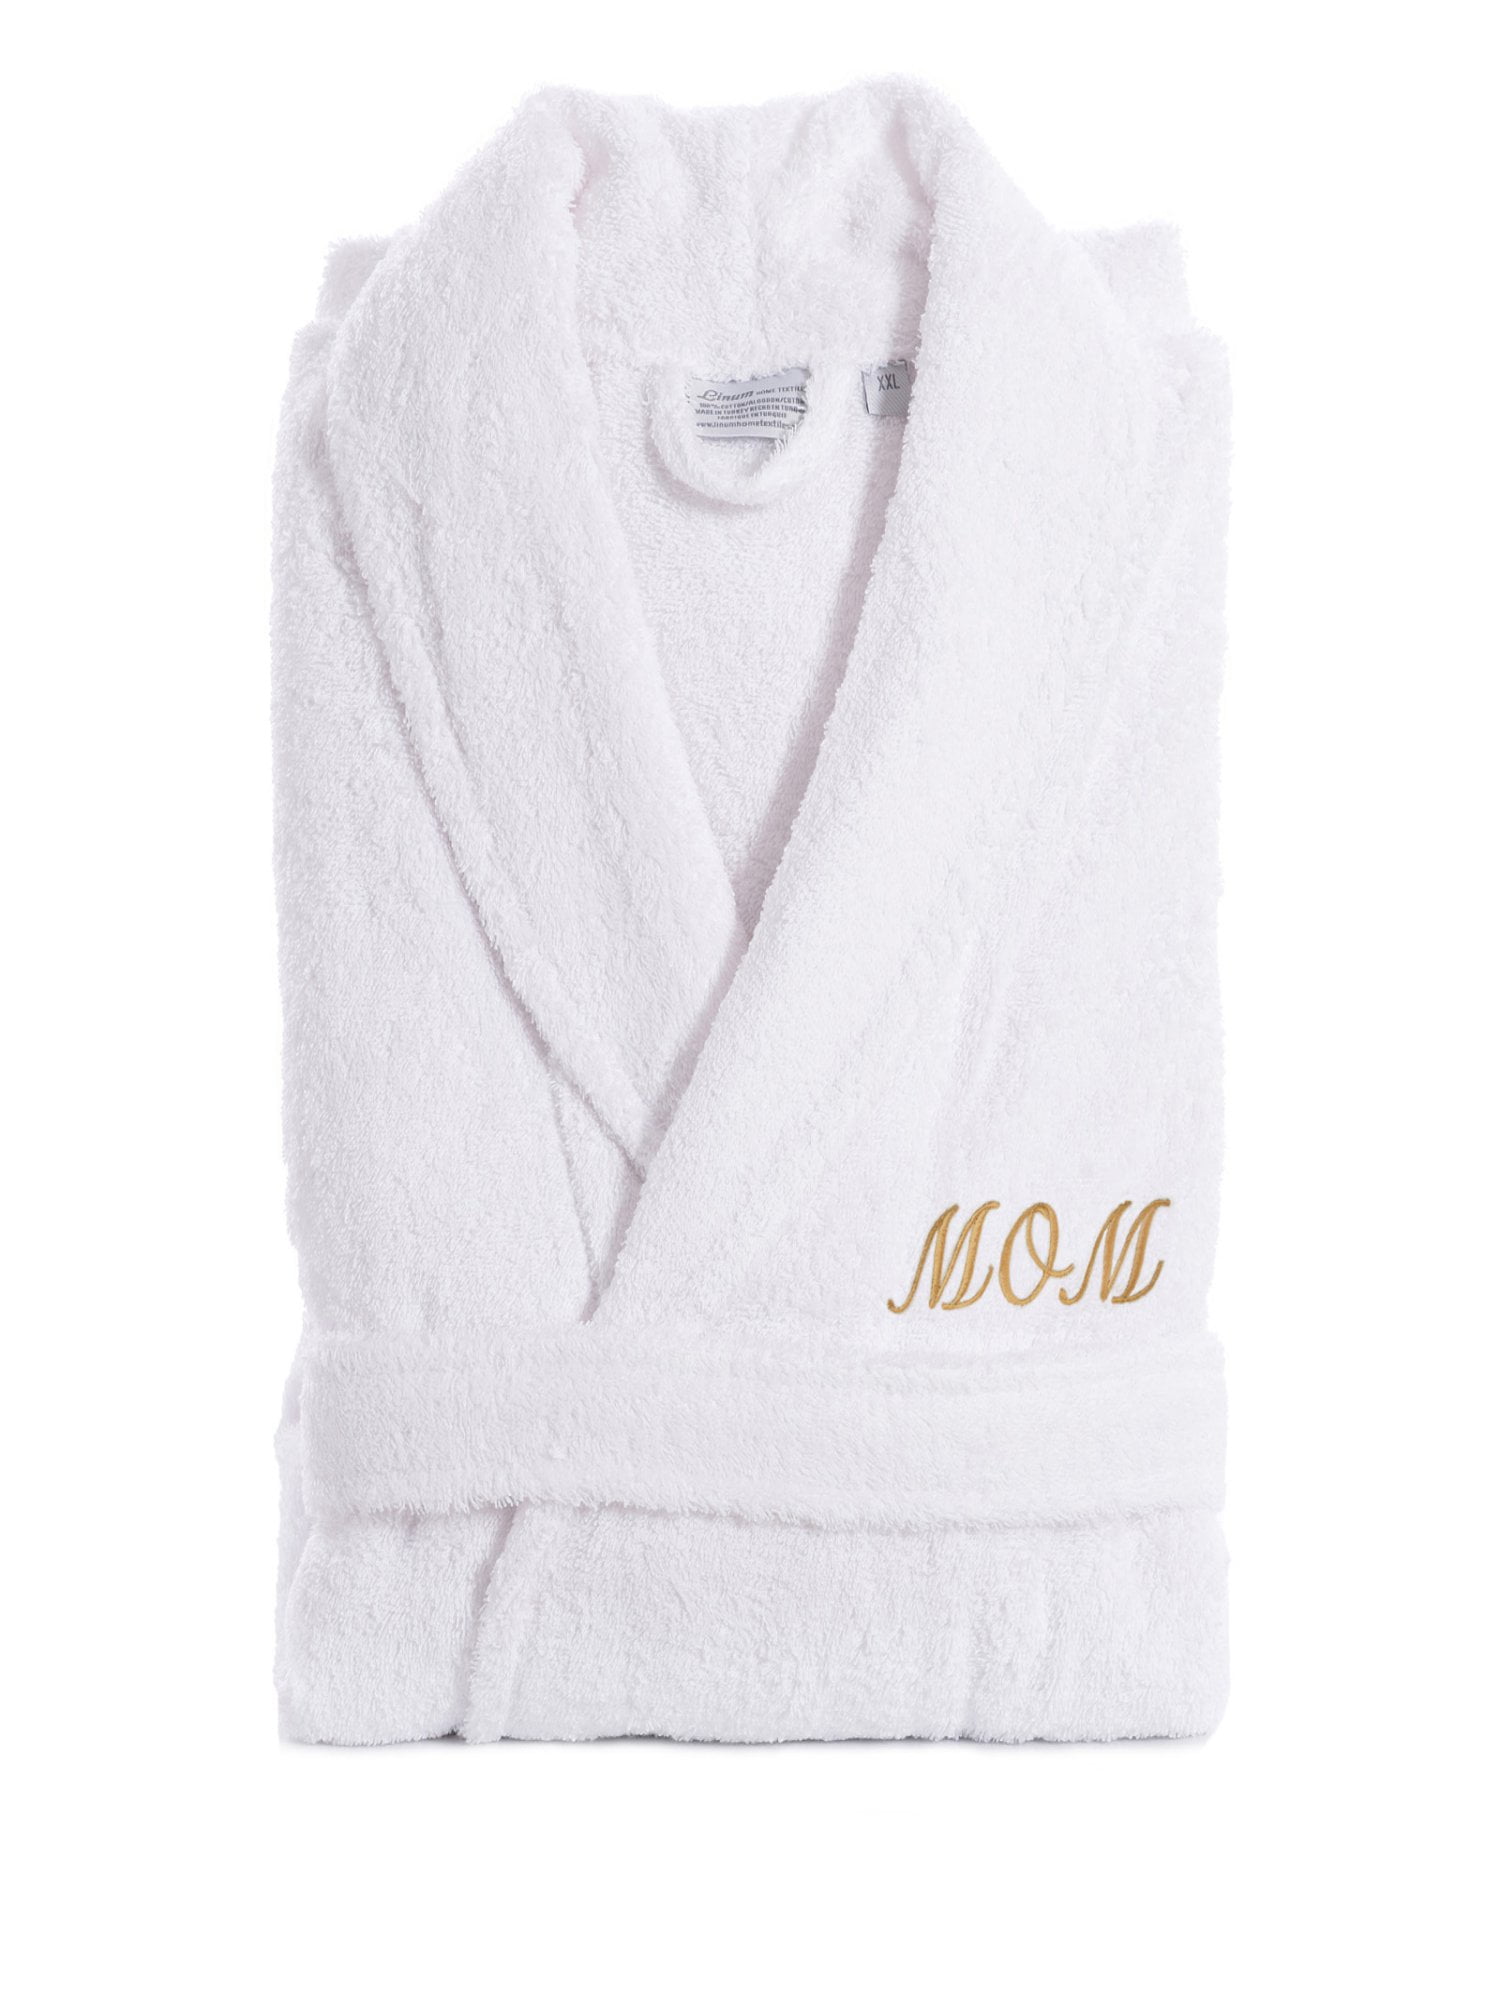 Towel Wrap Towels :: Terry Wraps :: 100% Turkish Cotton White Terry Cloth  Spa, Bath Wrap - Wholesale bathrobes, Spa robes, Kids robes, Cotton robes,  Spa Slippers, Wholesale Towels